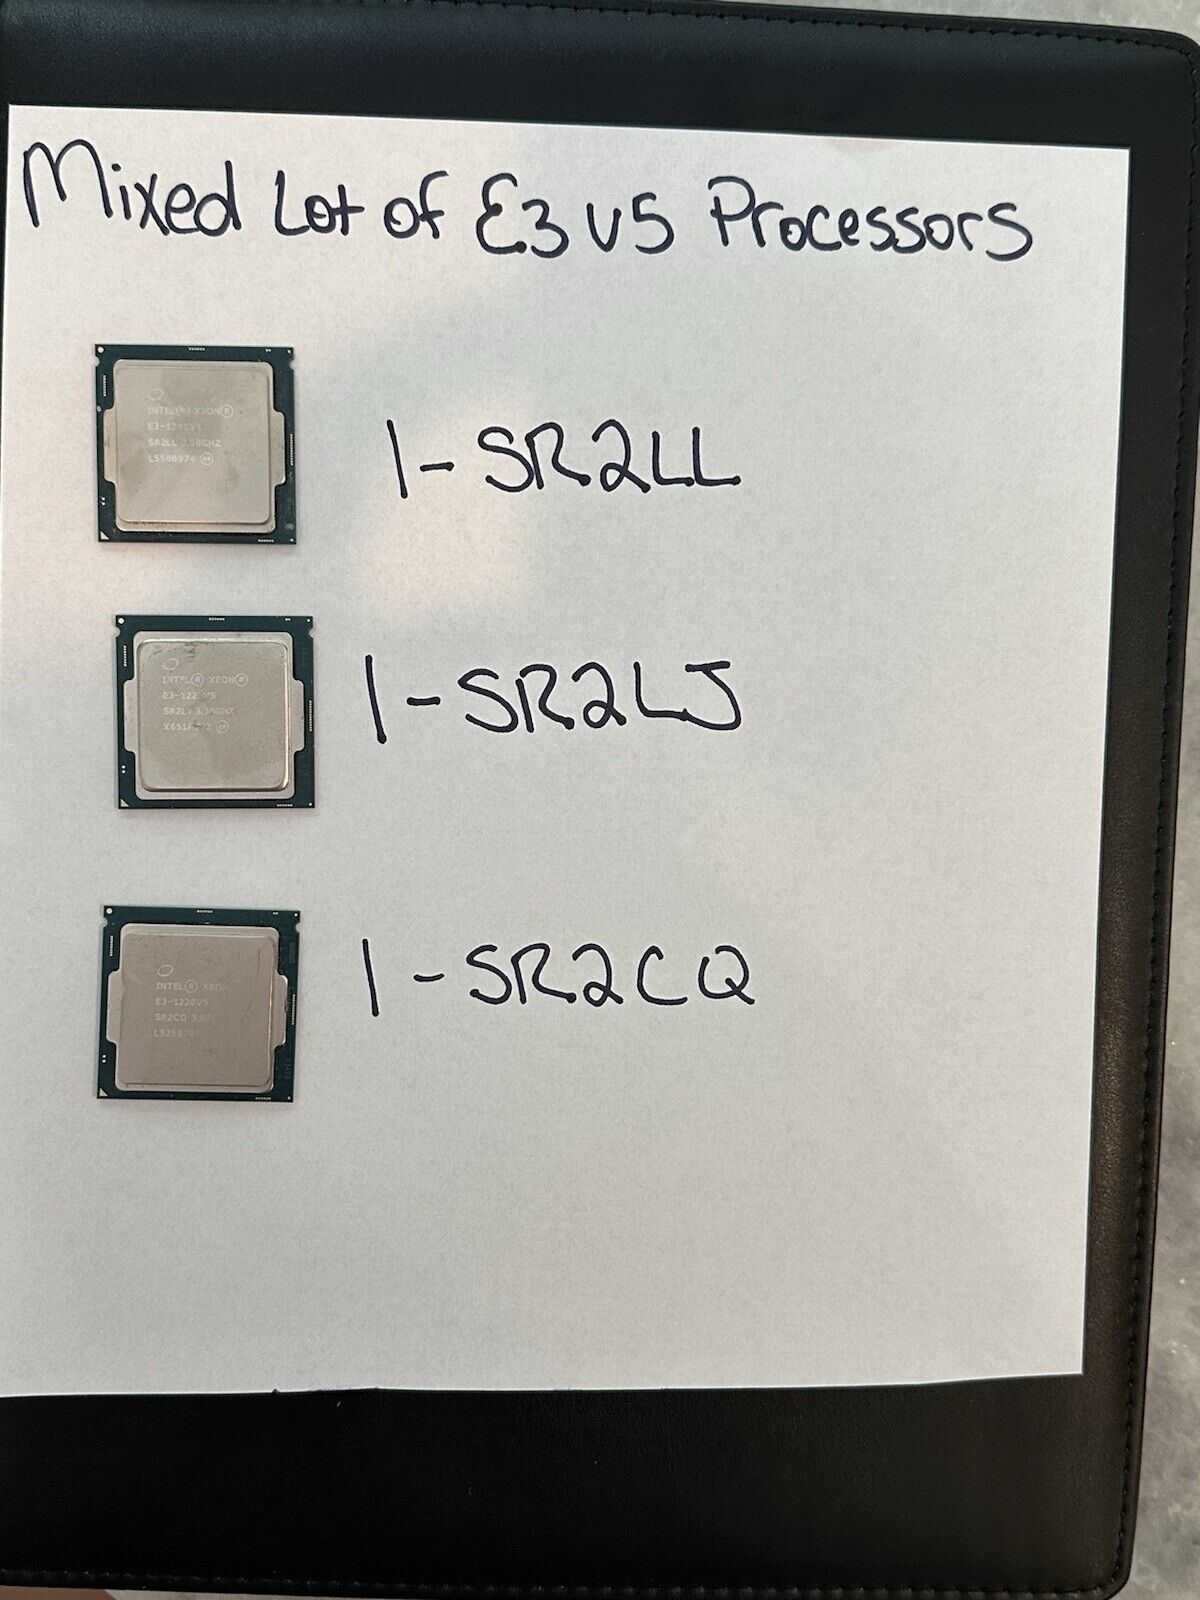 Mixed Lot Of 3 -Intel Xeon E3-CPU Processor SR2LL, SR2LJ, SR2CQ